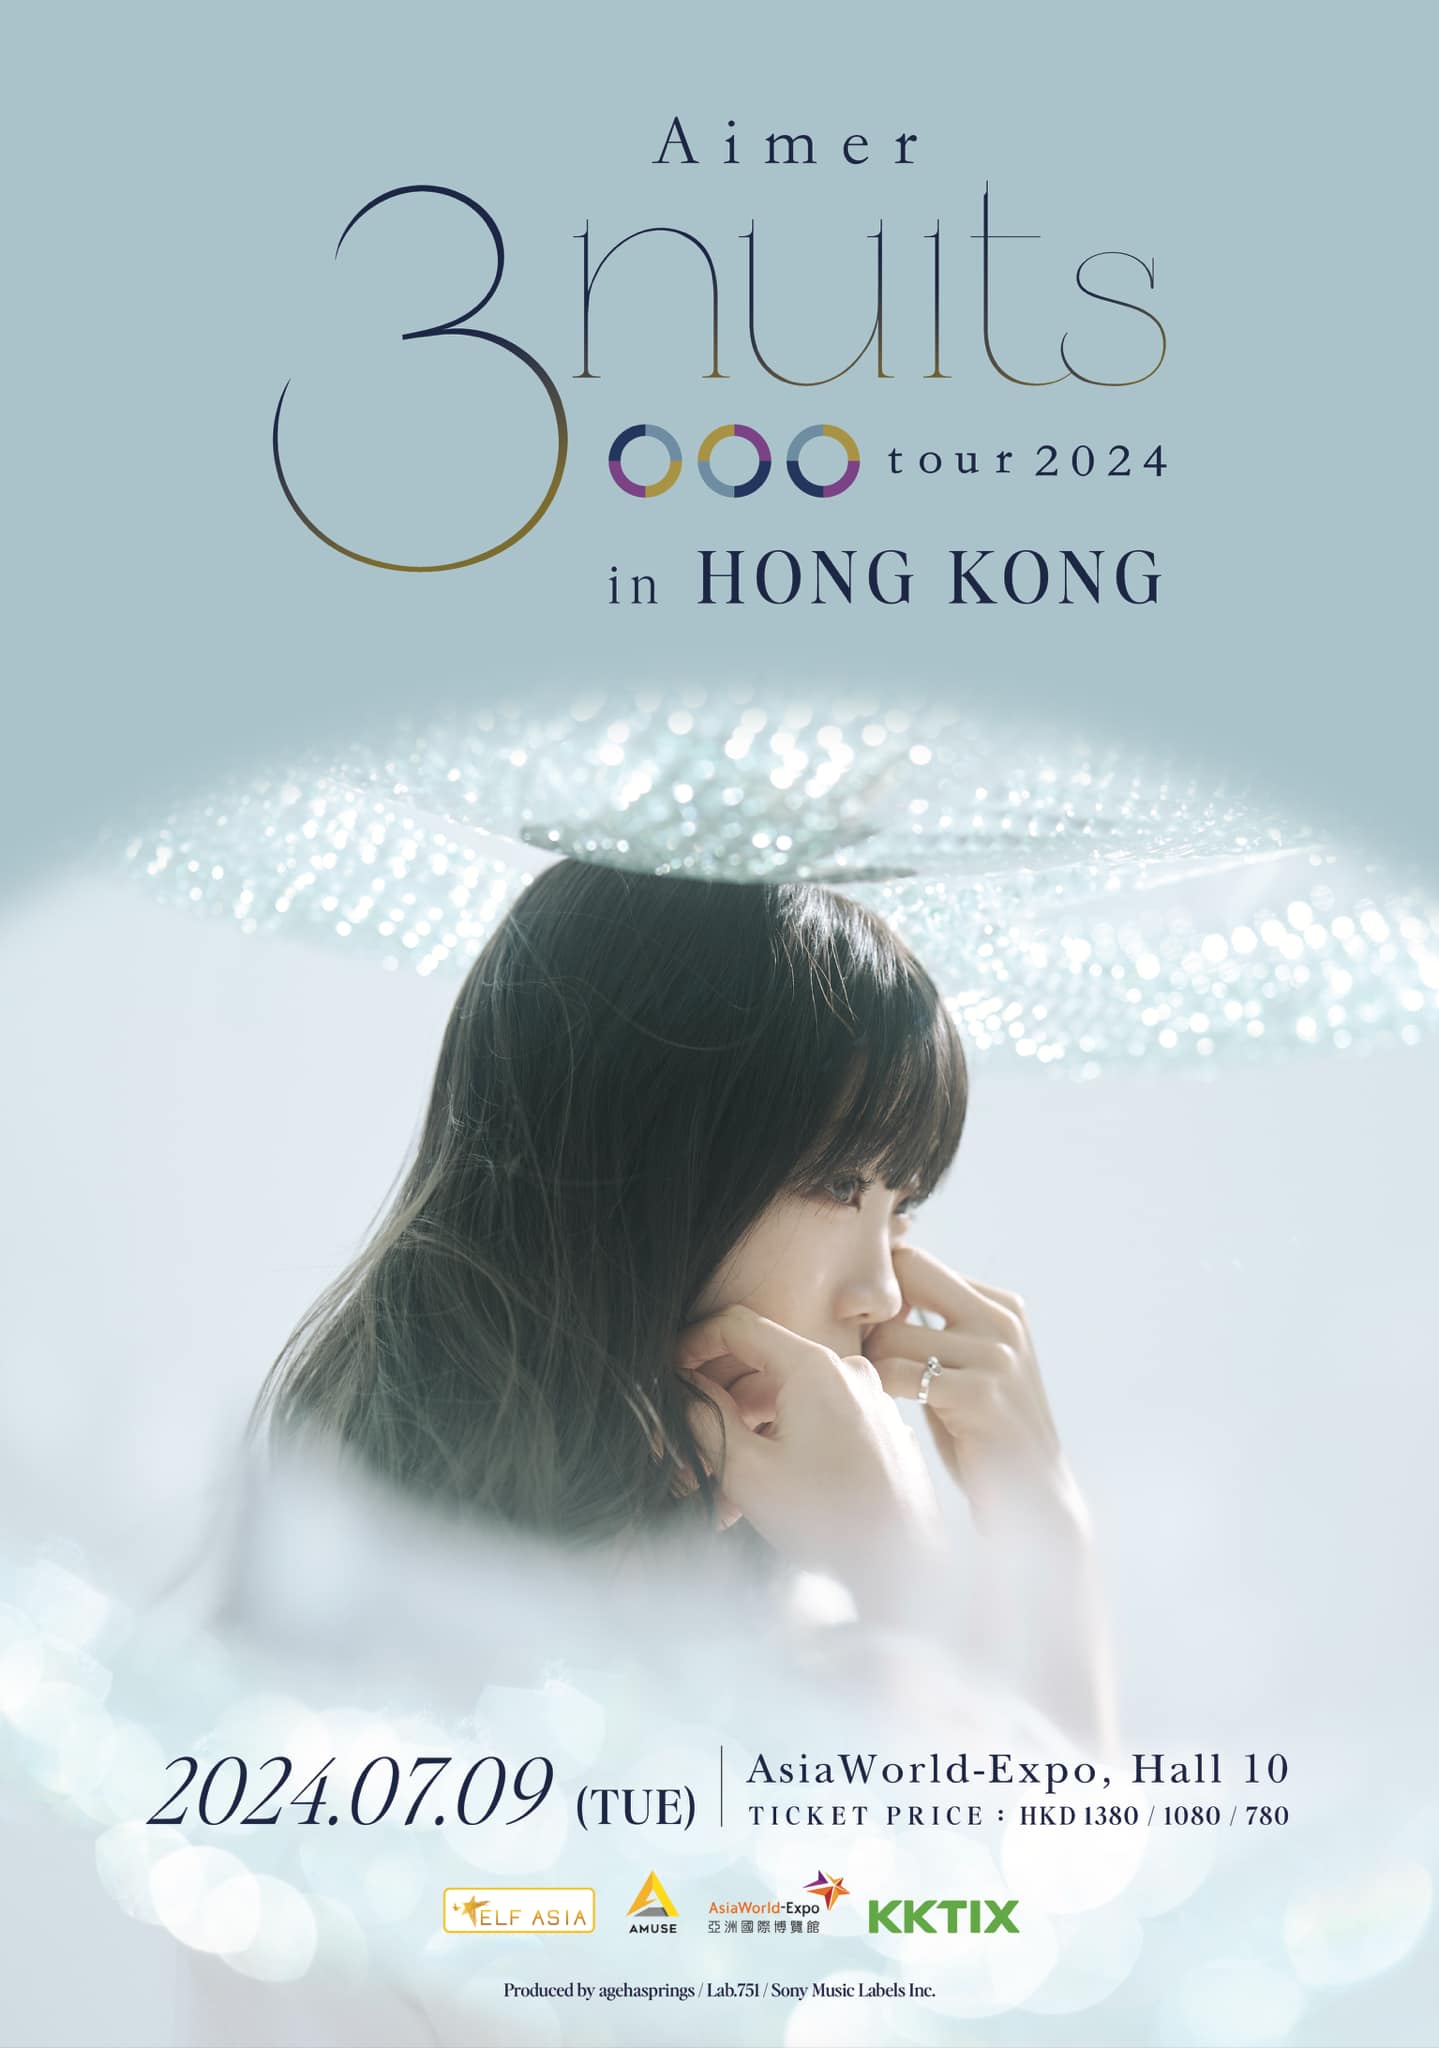 Aimer演唱會2024香港站｜Aimer 3 nuits tour 2024 in Hong Kong｜亞洲國際博覽館